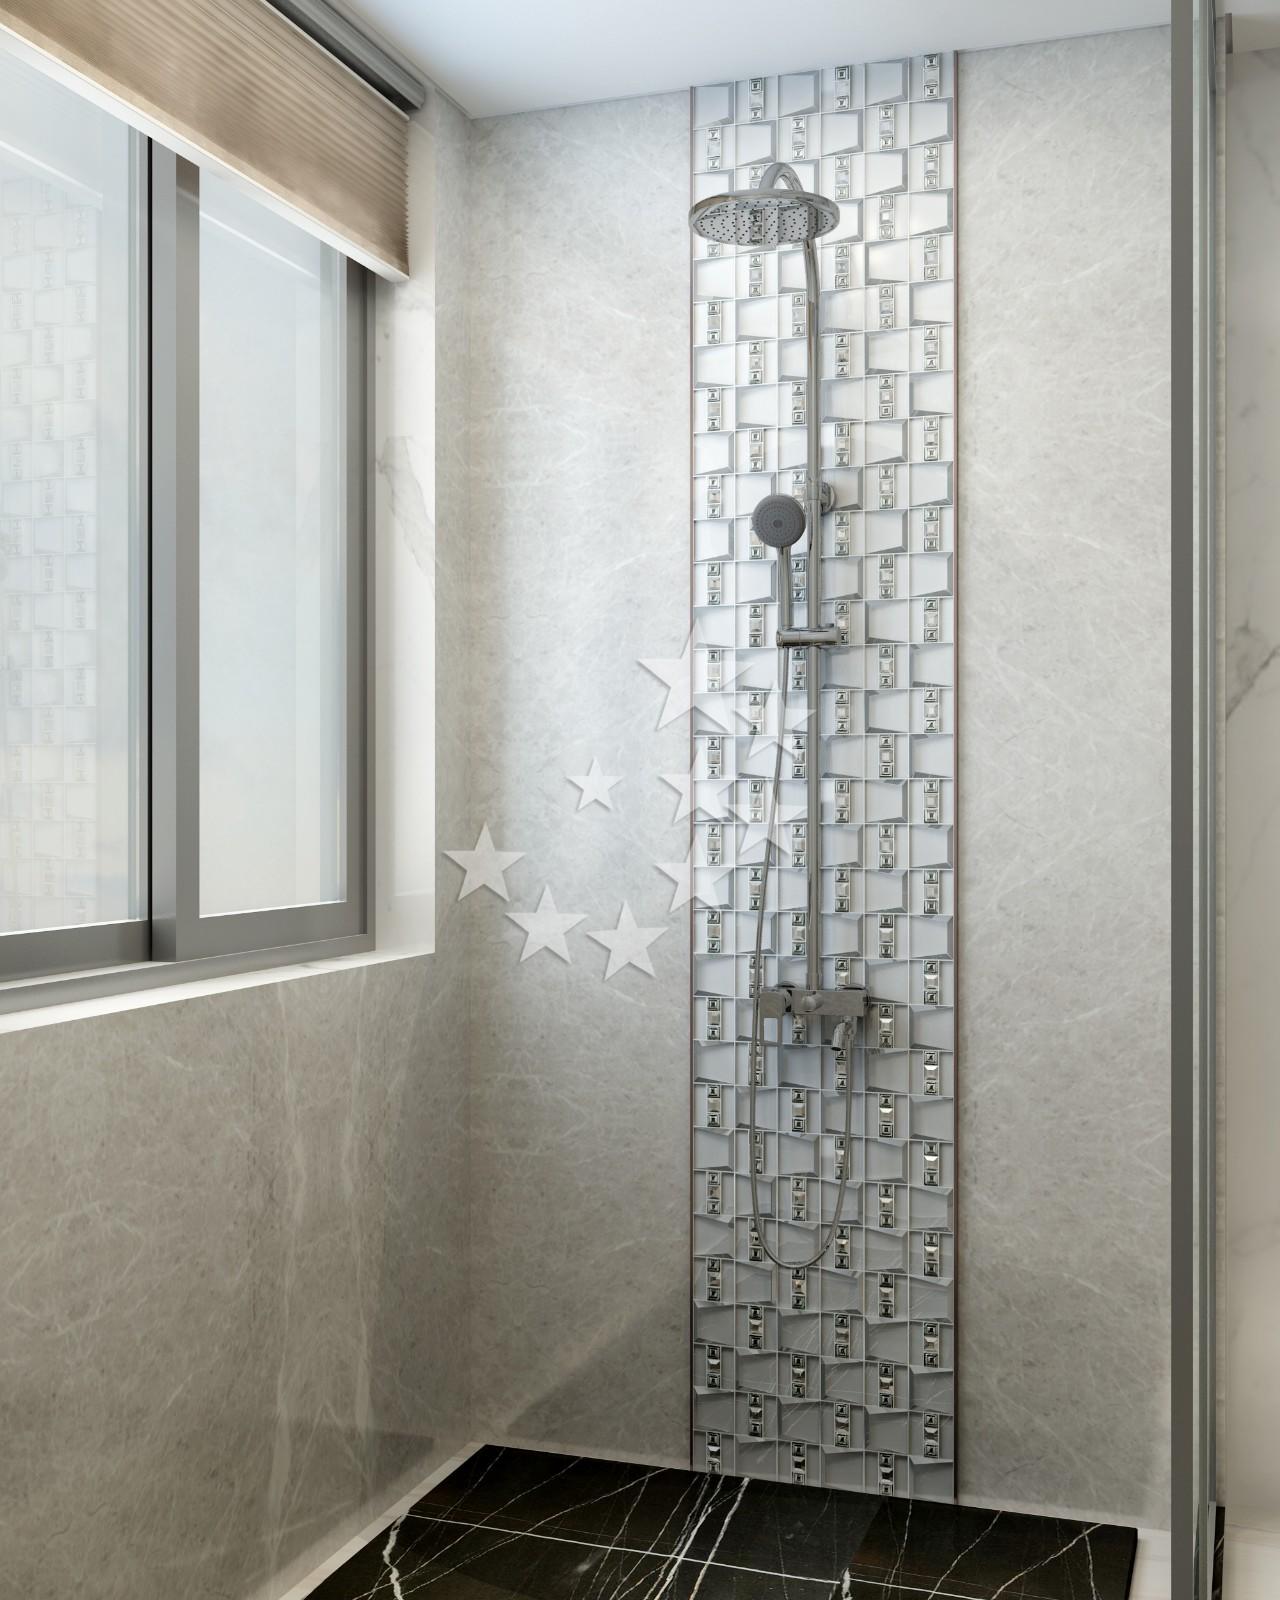 Heng Xing 3x3 kitchen backsplash tile supplier for bathroom-6